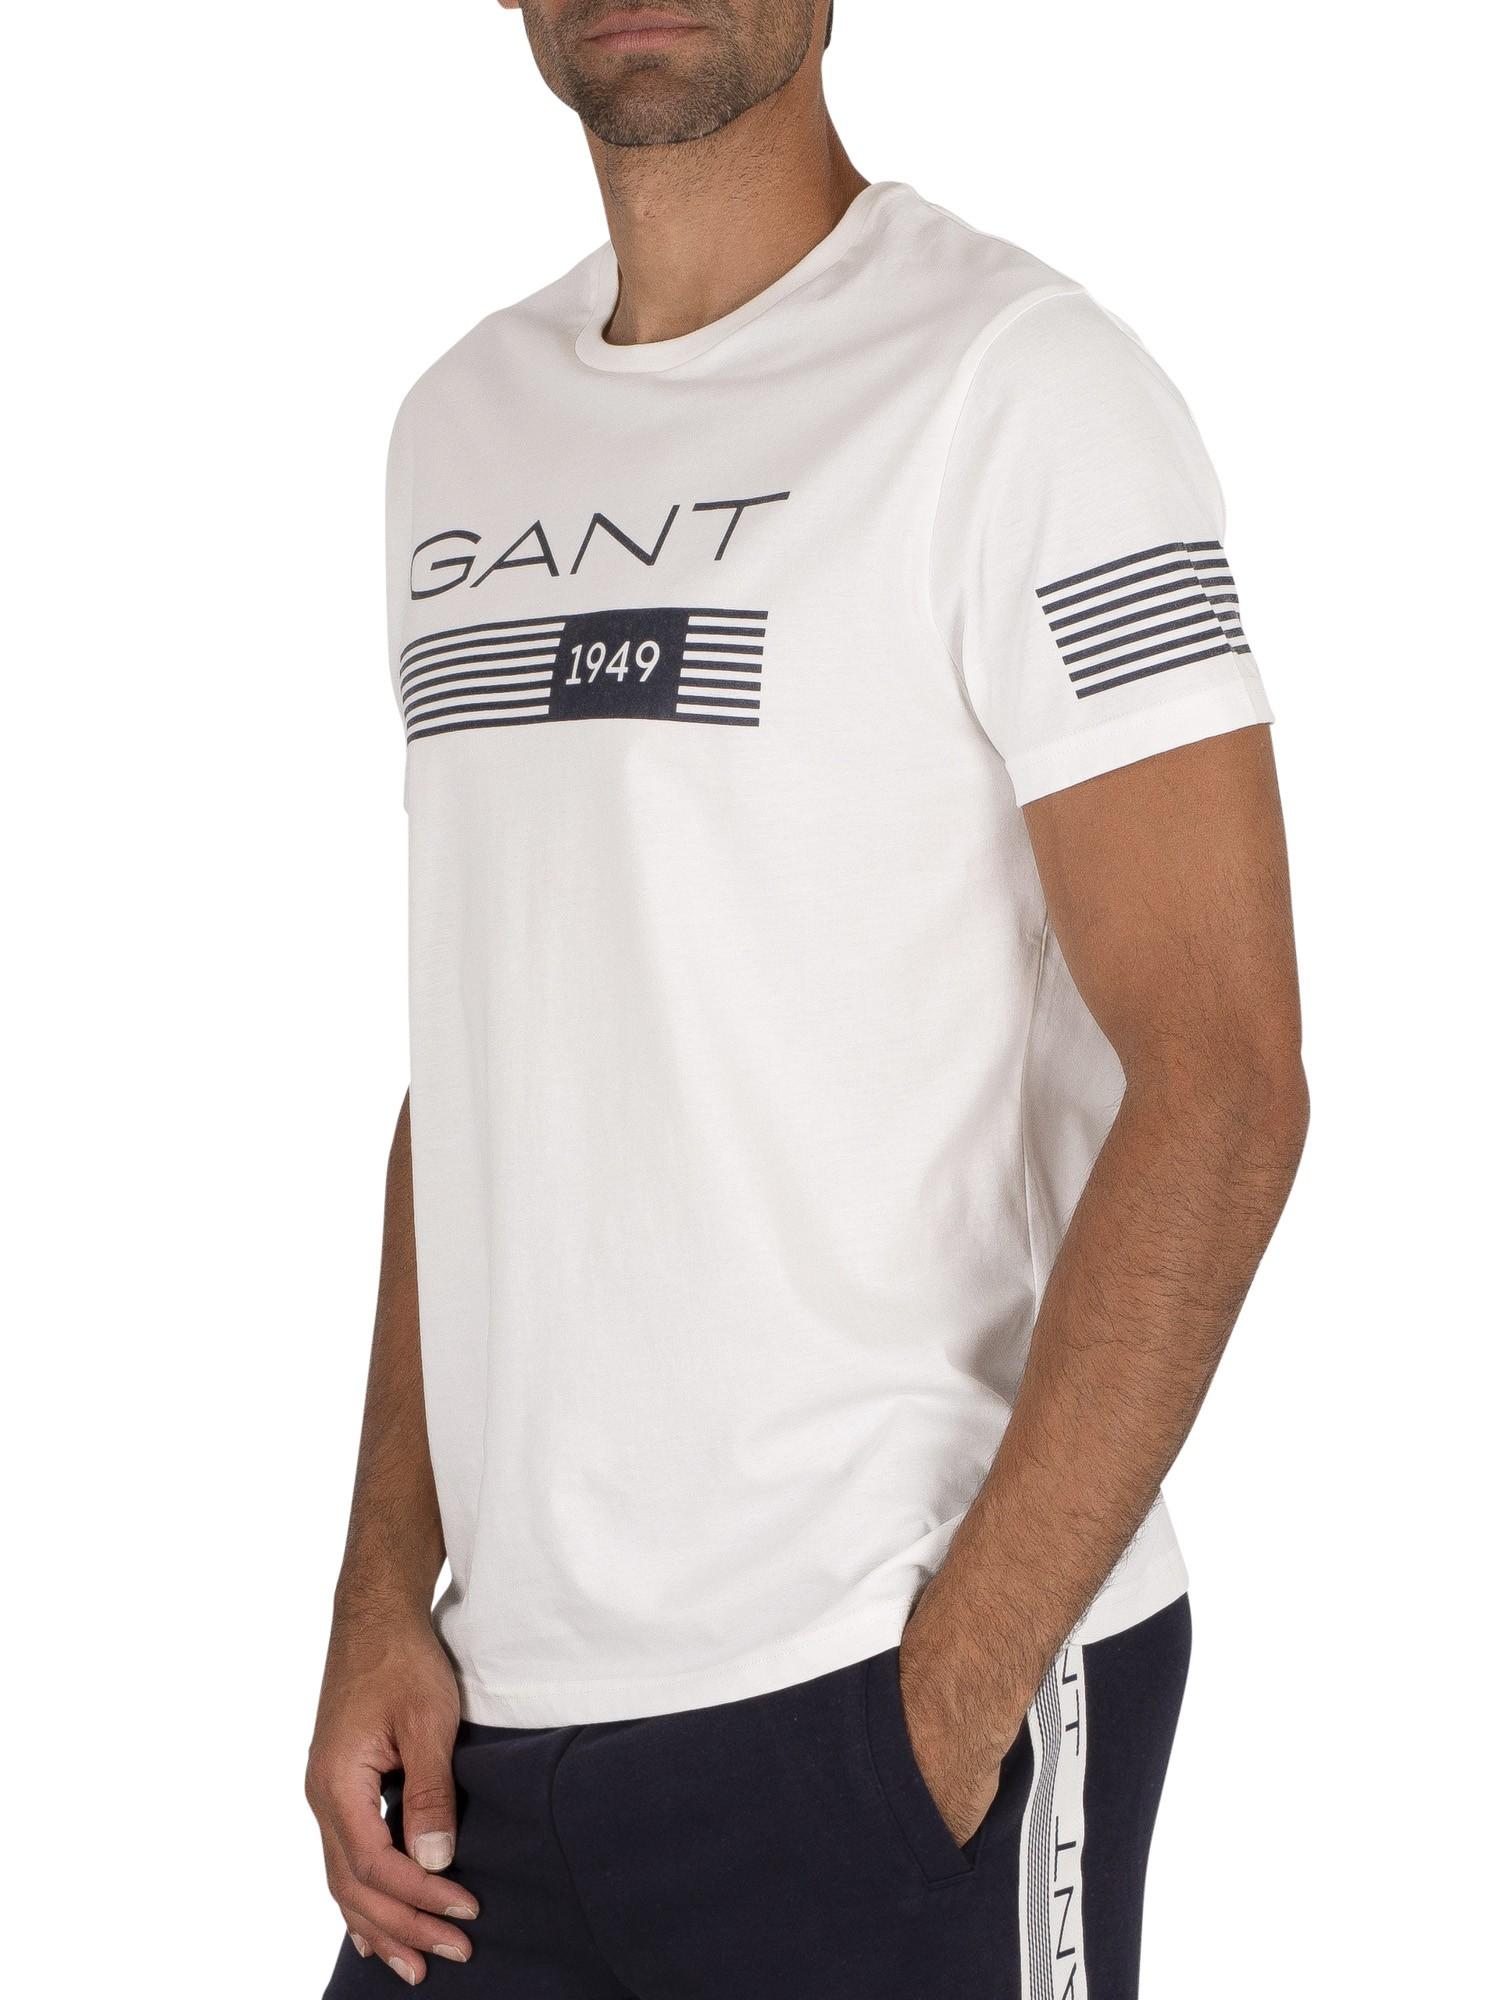 GANT Stripes T-shirt in Eggshell (White) for Men - Lyst